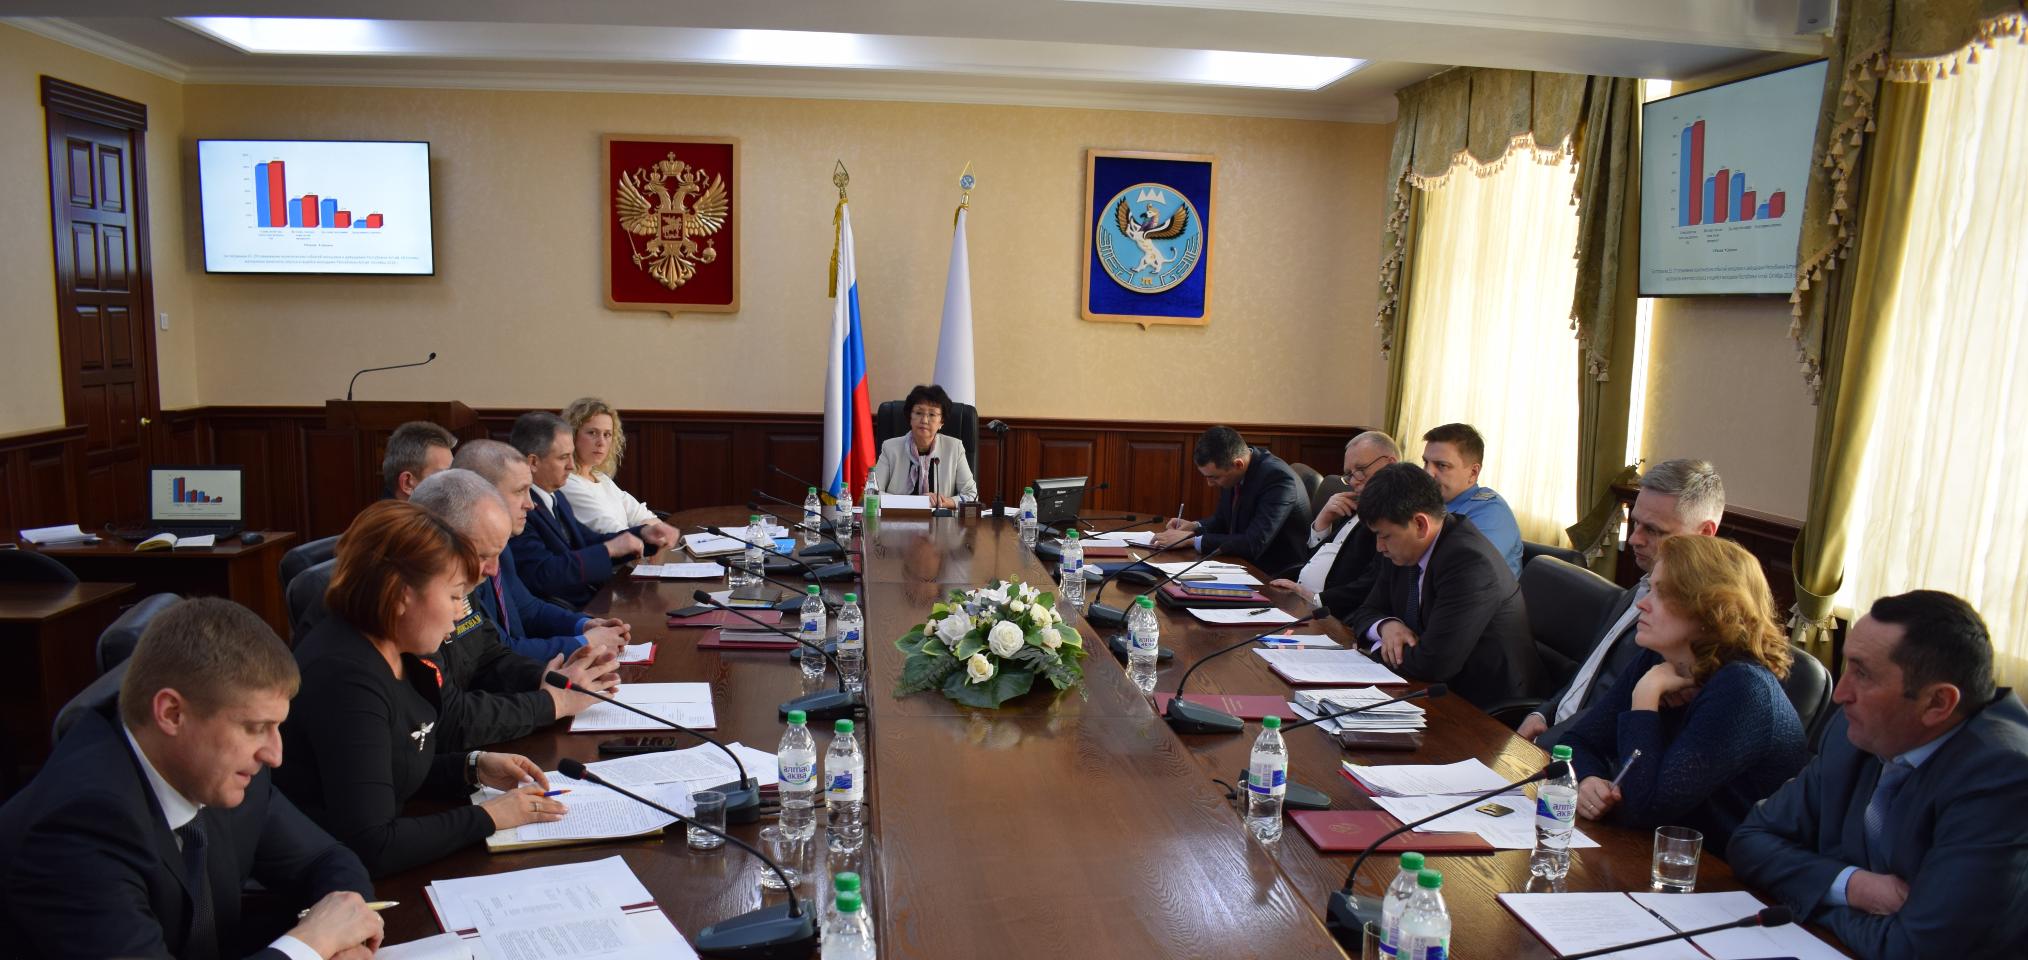 Заседание комиссии по противодействию экстремизму состоялось в Правительстве региона